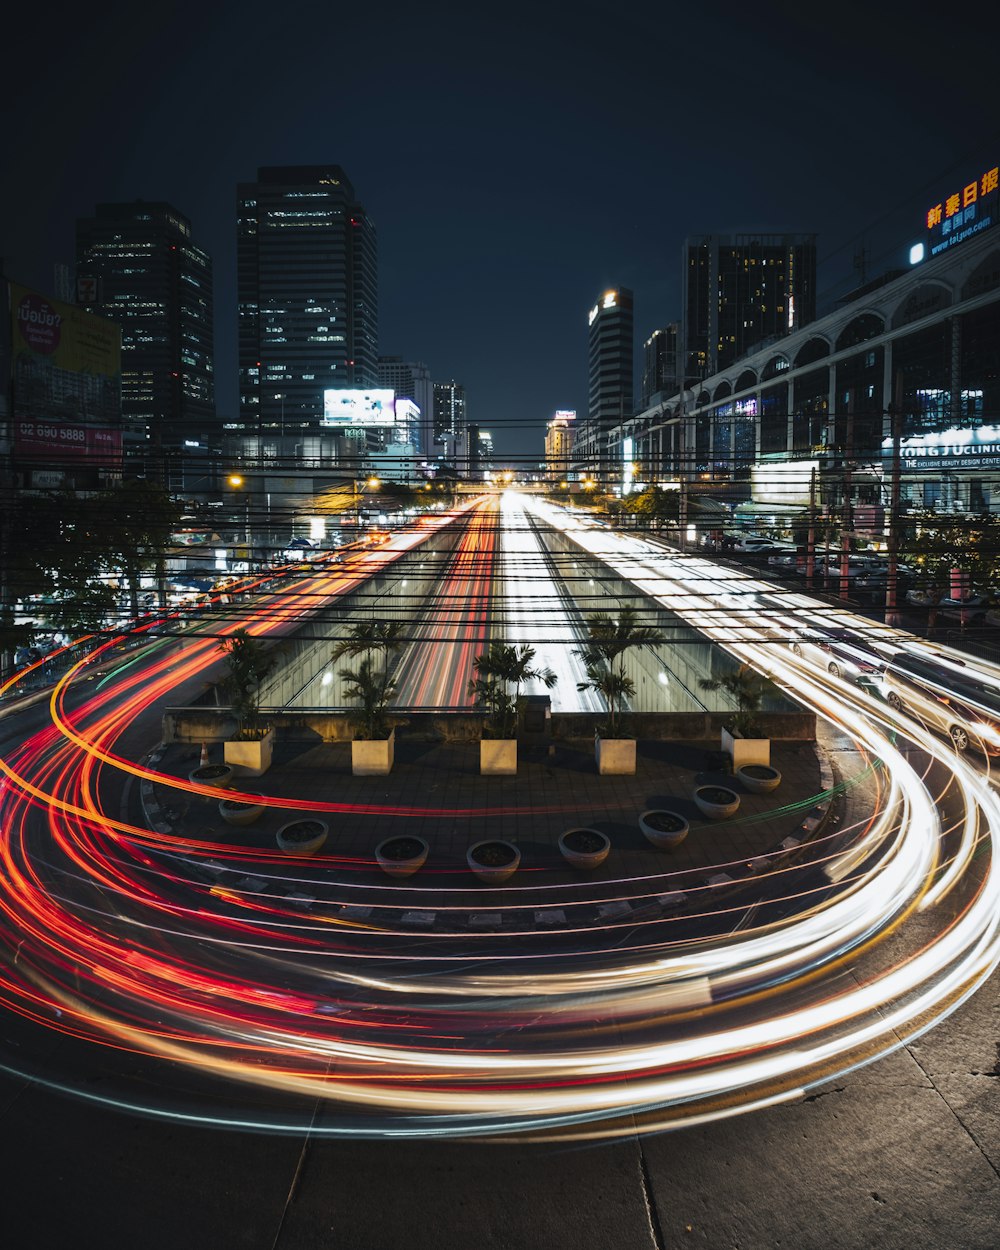 Zeitrafferaufnahmen von Autos auf der Straße während der Nachtzeit